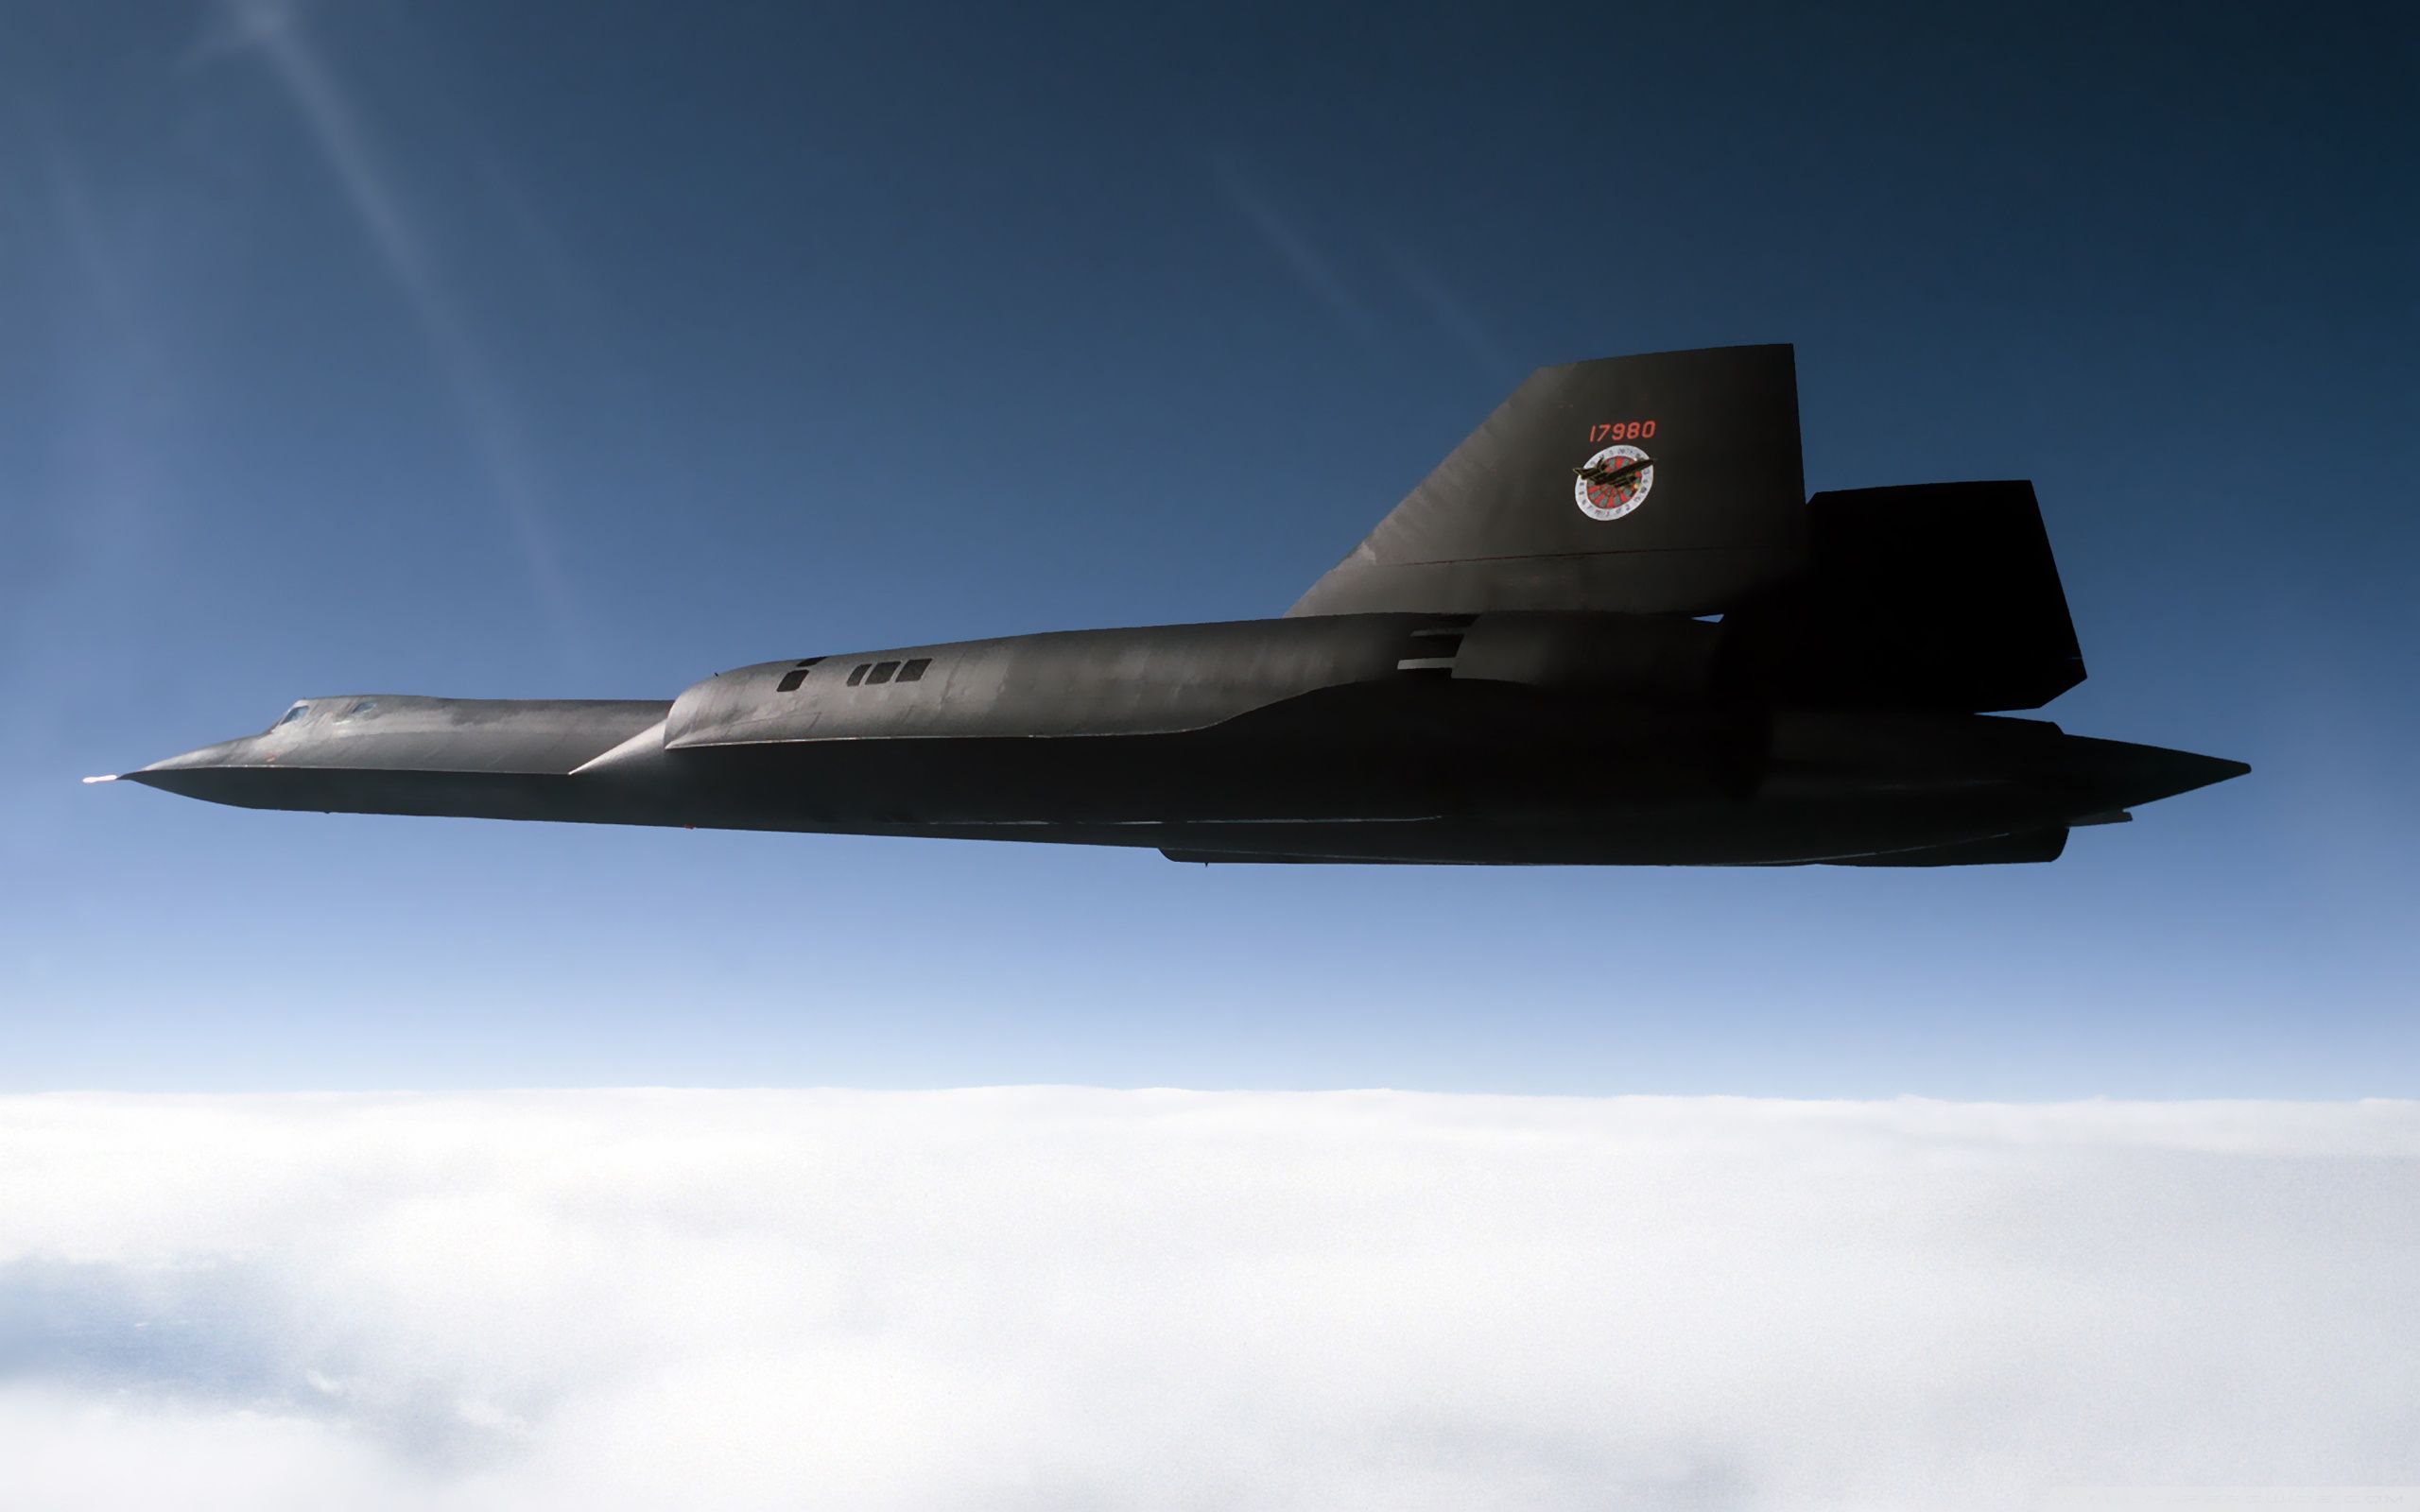 Lockheed SR 71 Blackbird Wallpaper Full HD 2560x1600 - Free